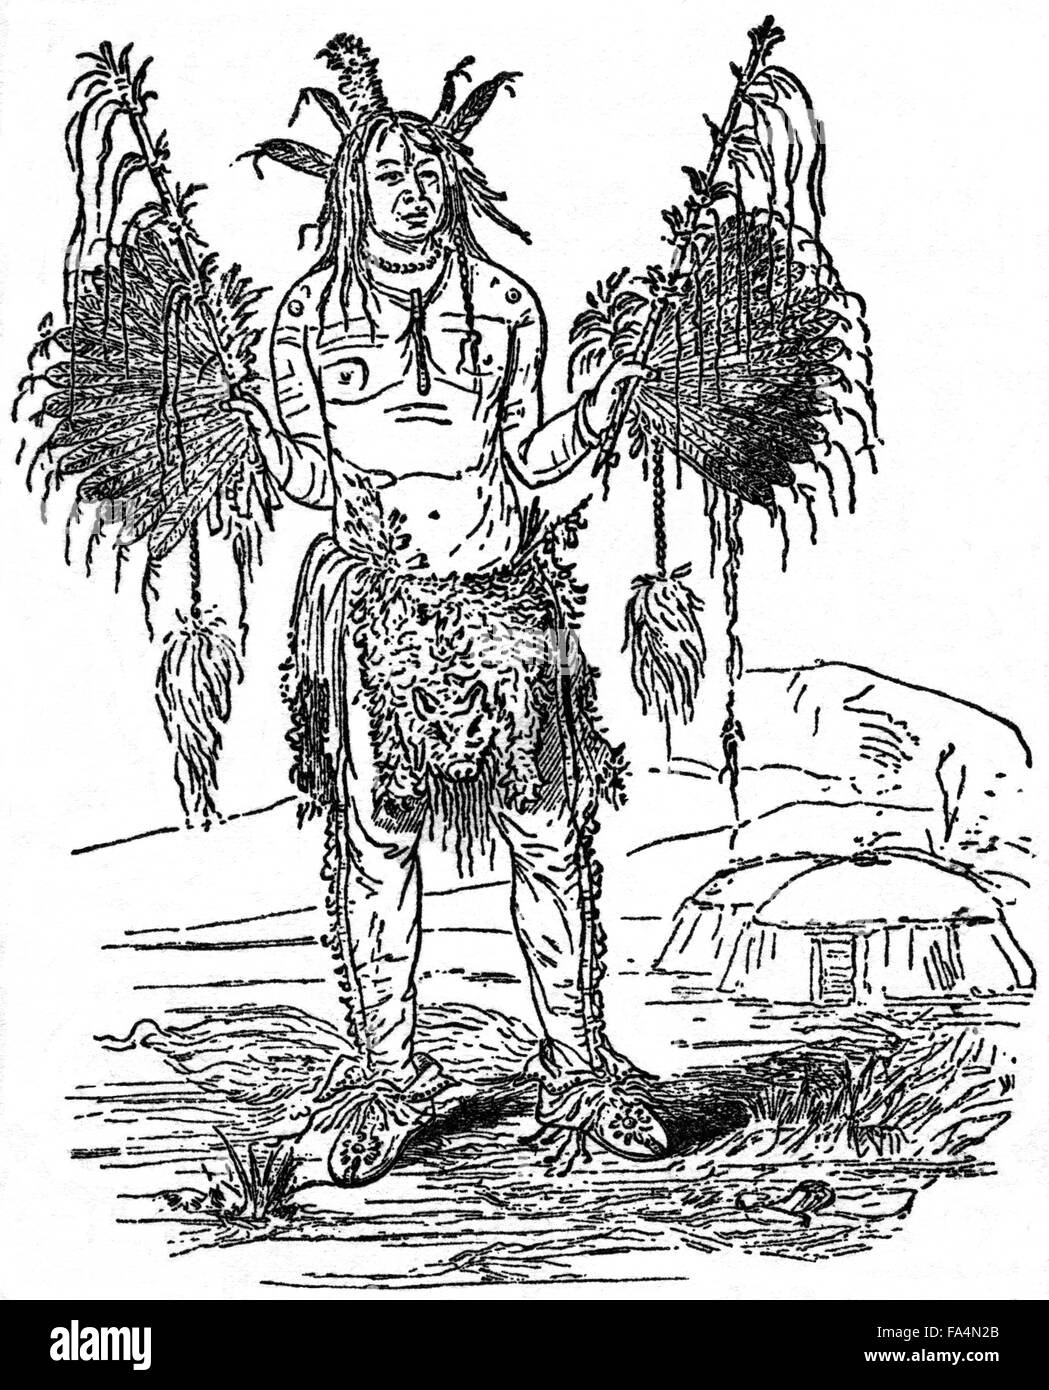 "Medizinmann in fantastischen Kostümen" buchen Illustration aus "Indische Schrecken oder Massaker der roten Männer" von Henry Davenport Northrop, 1891 Stockfoto